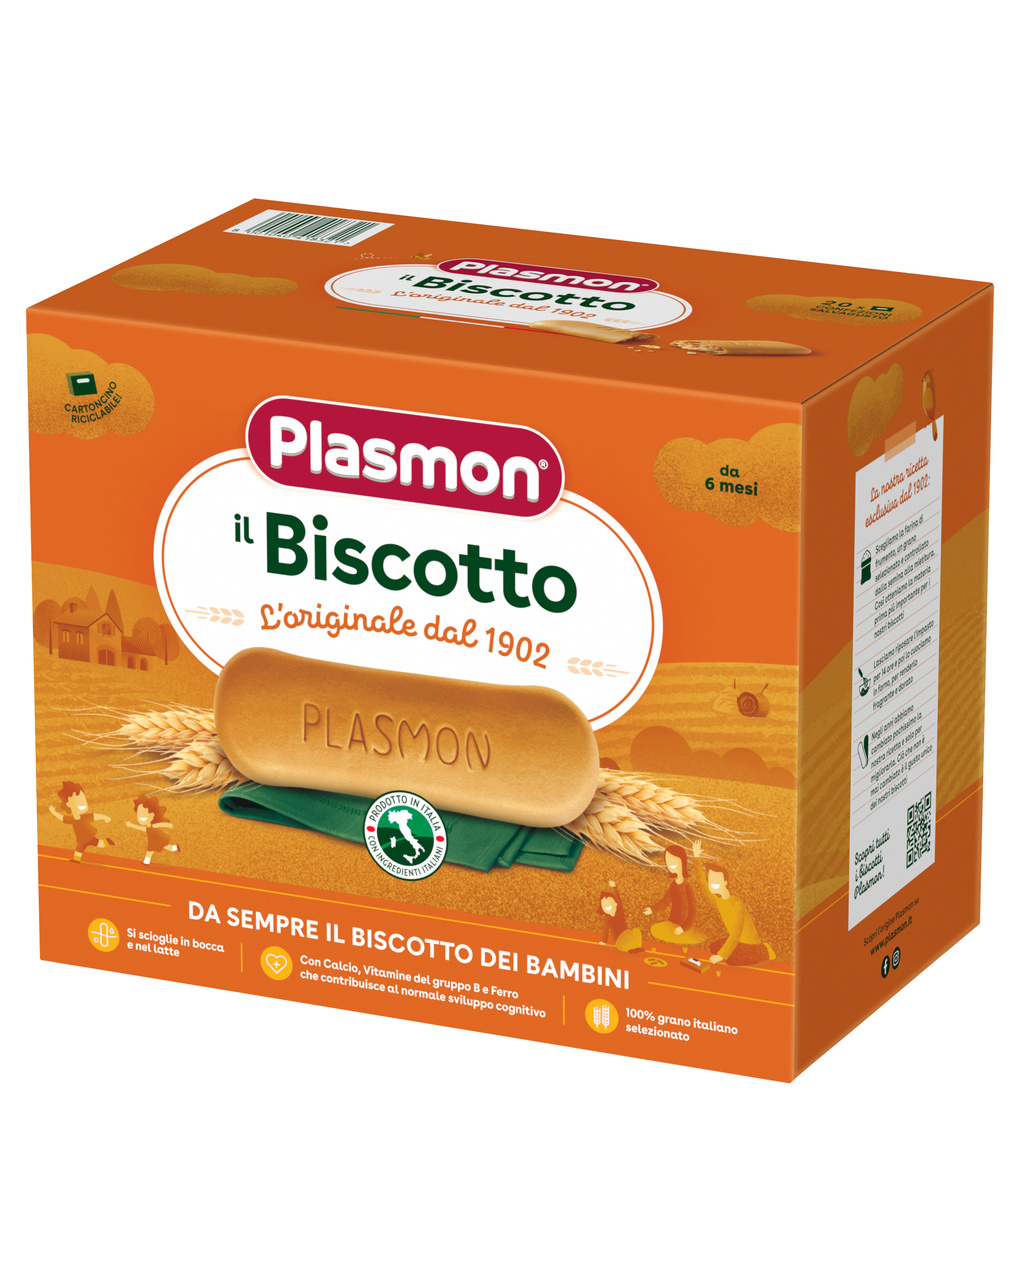 Plasmon – biscotto plasmon 1200g - Plasmon